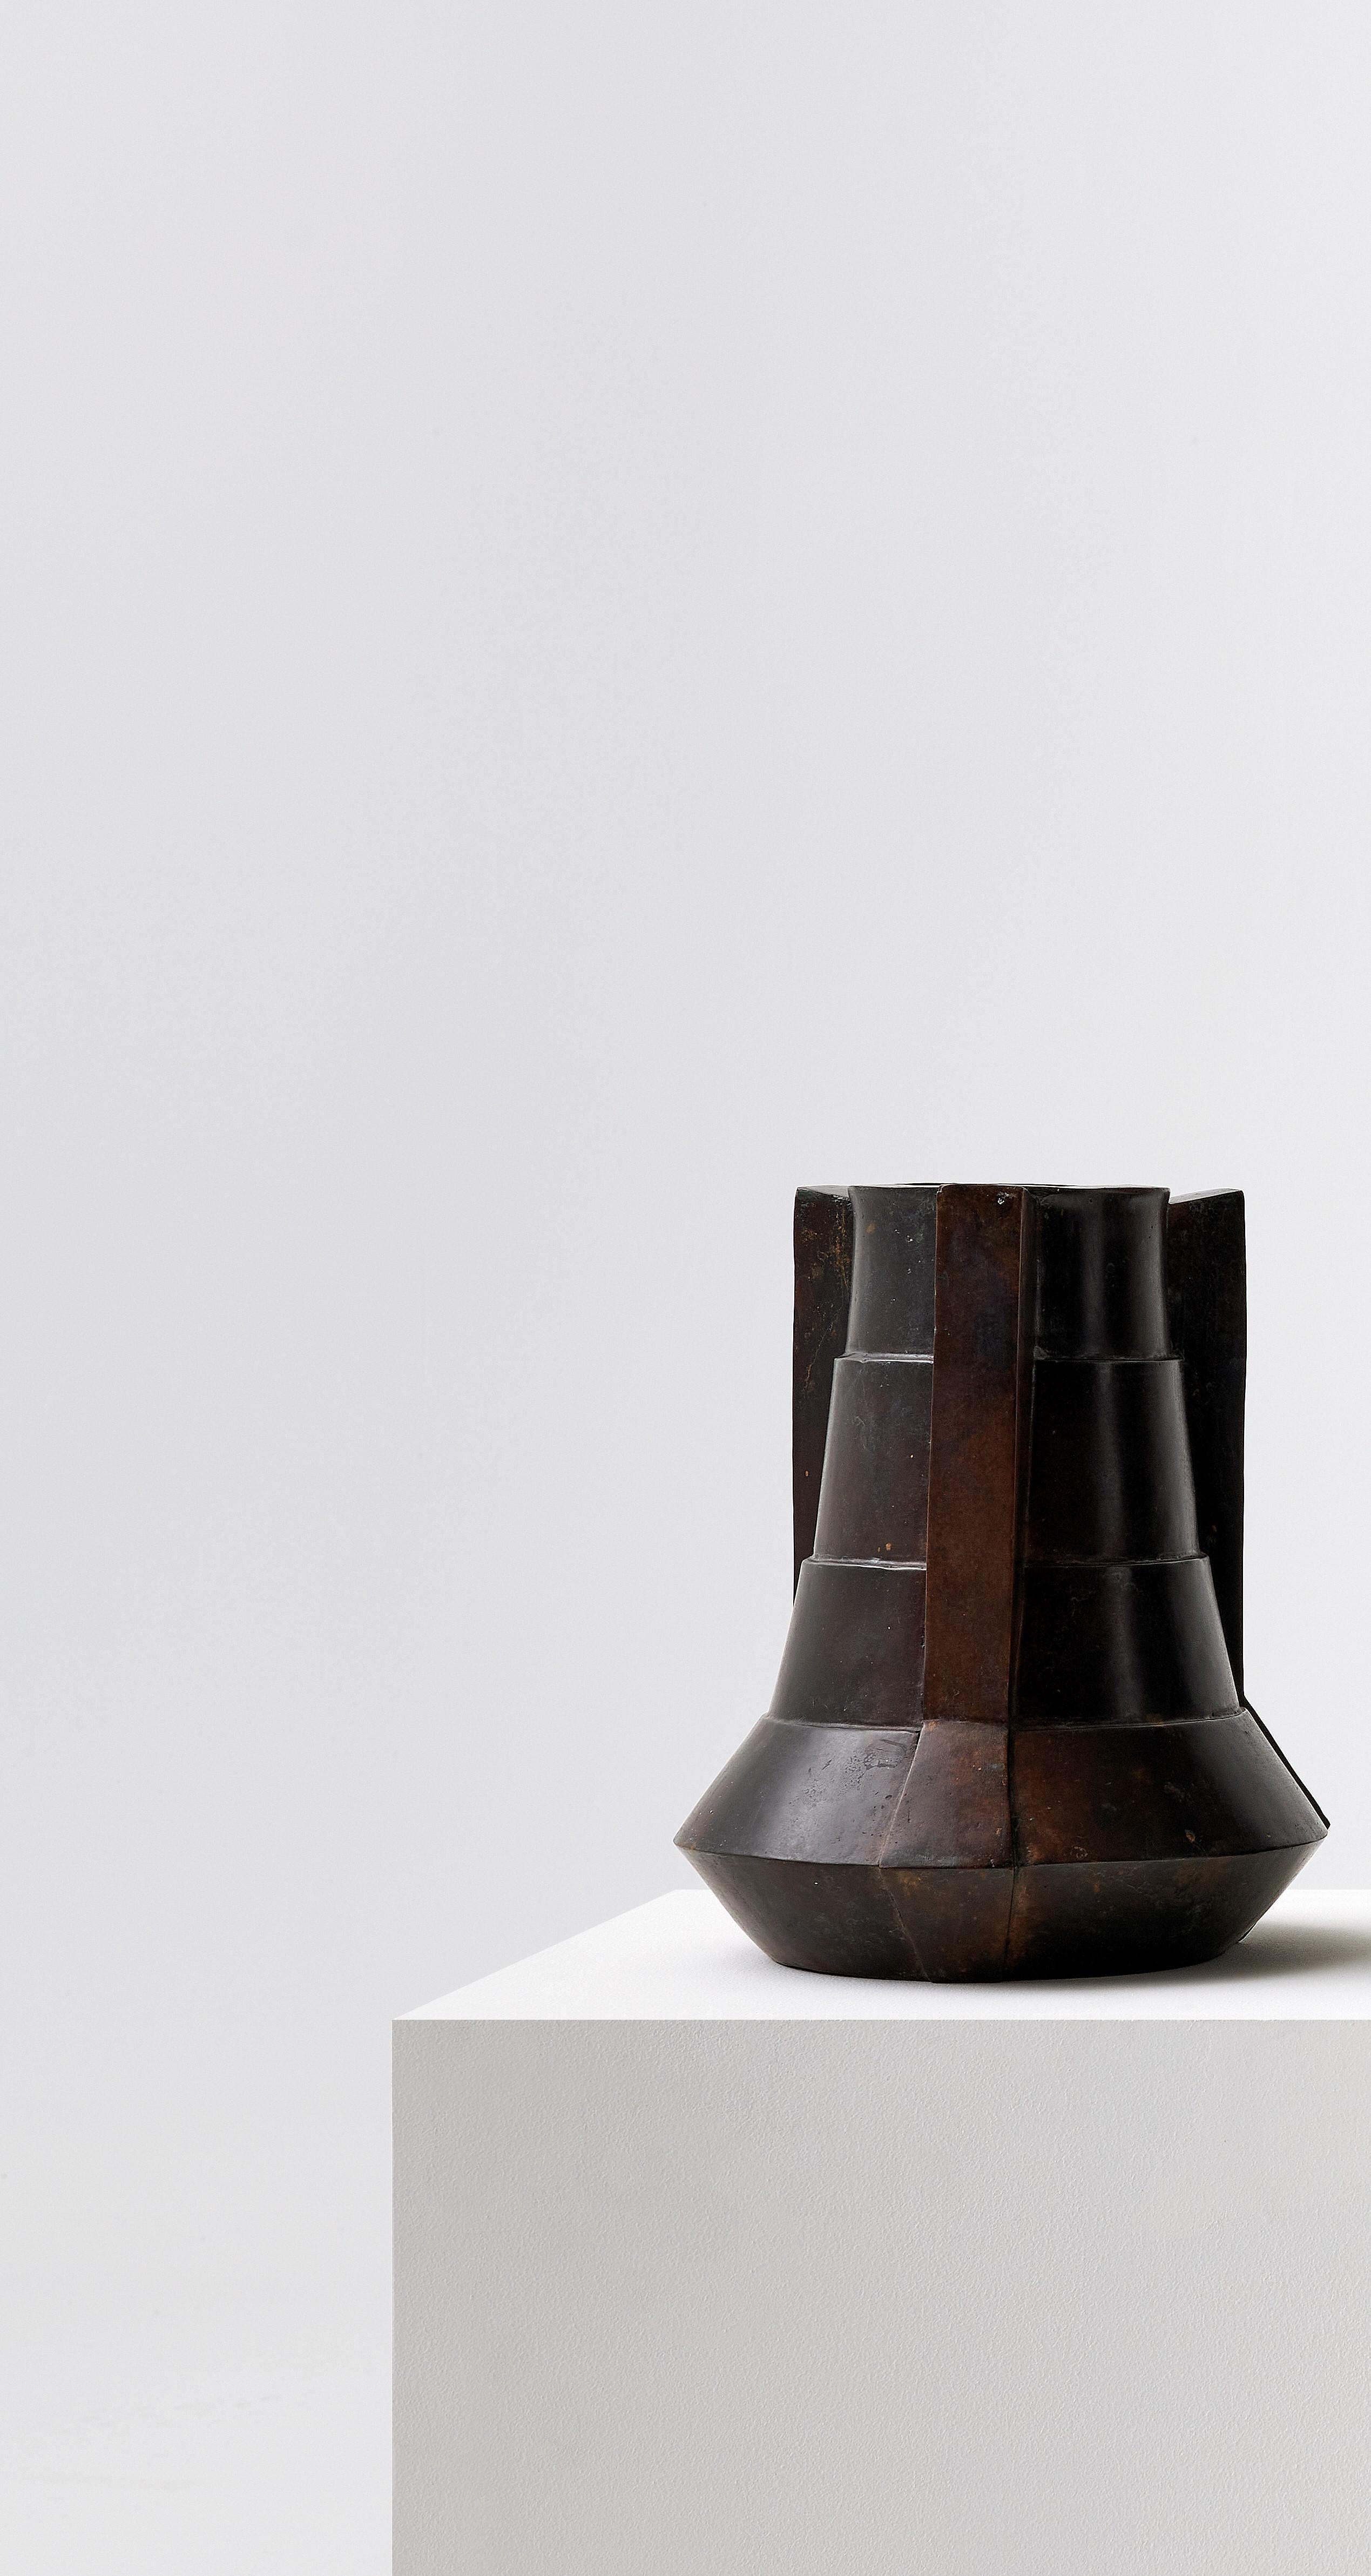 Vase en bronze de Lupo Horio¯kami
Dimensions : Diamètre 20 x hauteur 30 cm
MATERIAL : Bronze moyen acide

